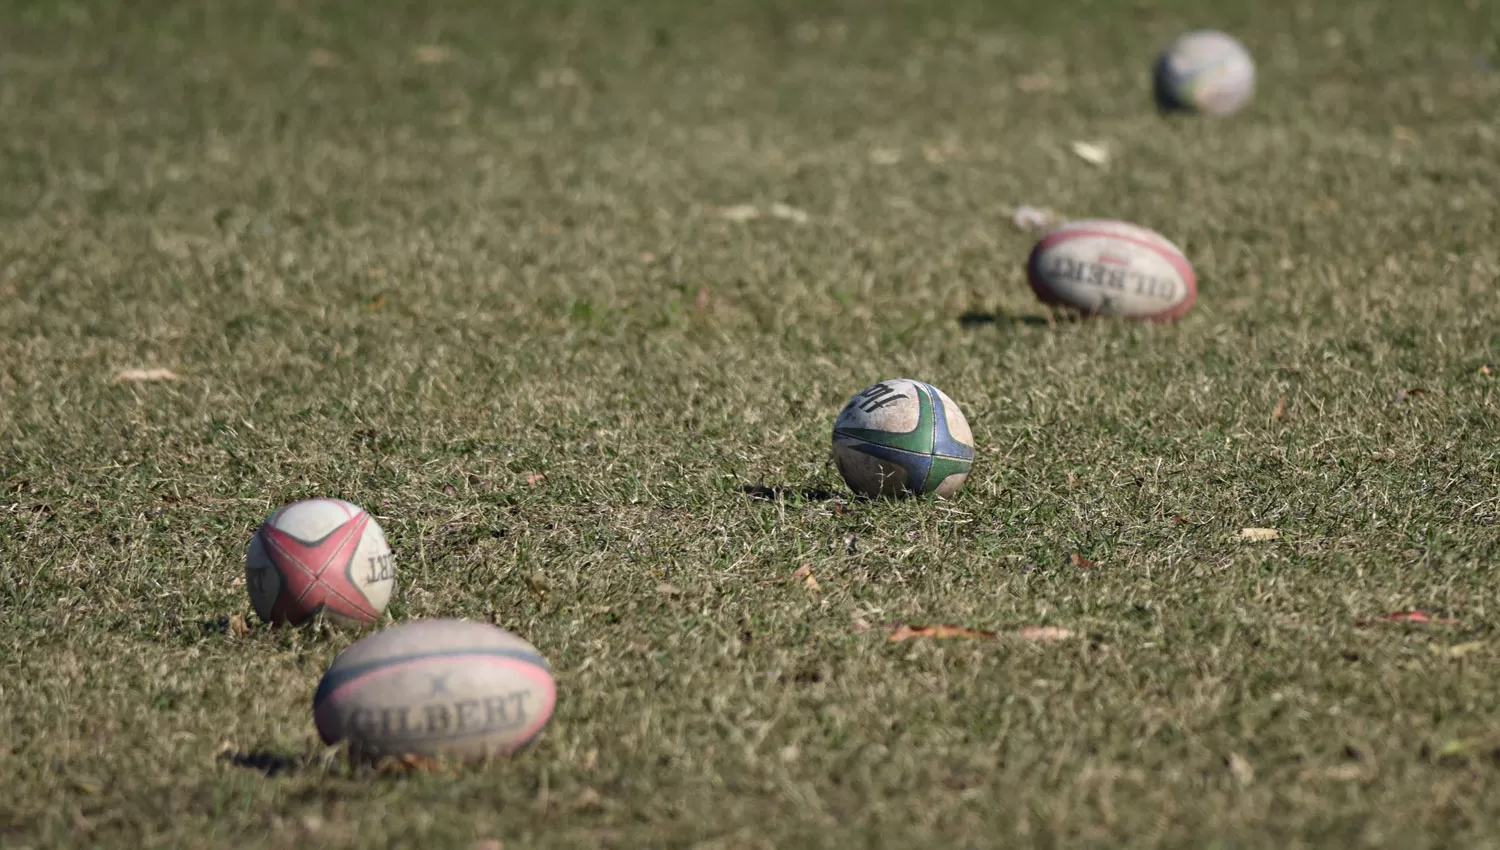 El 40% de los lectores de LA GACETA considera que el rugby exacerba la violencia